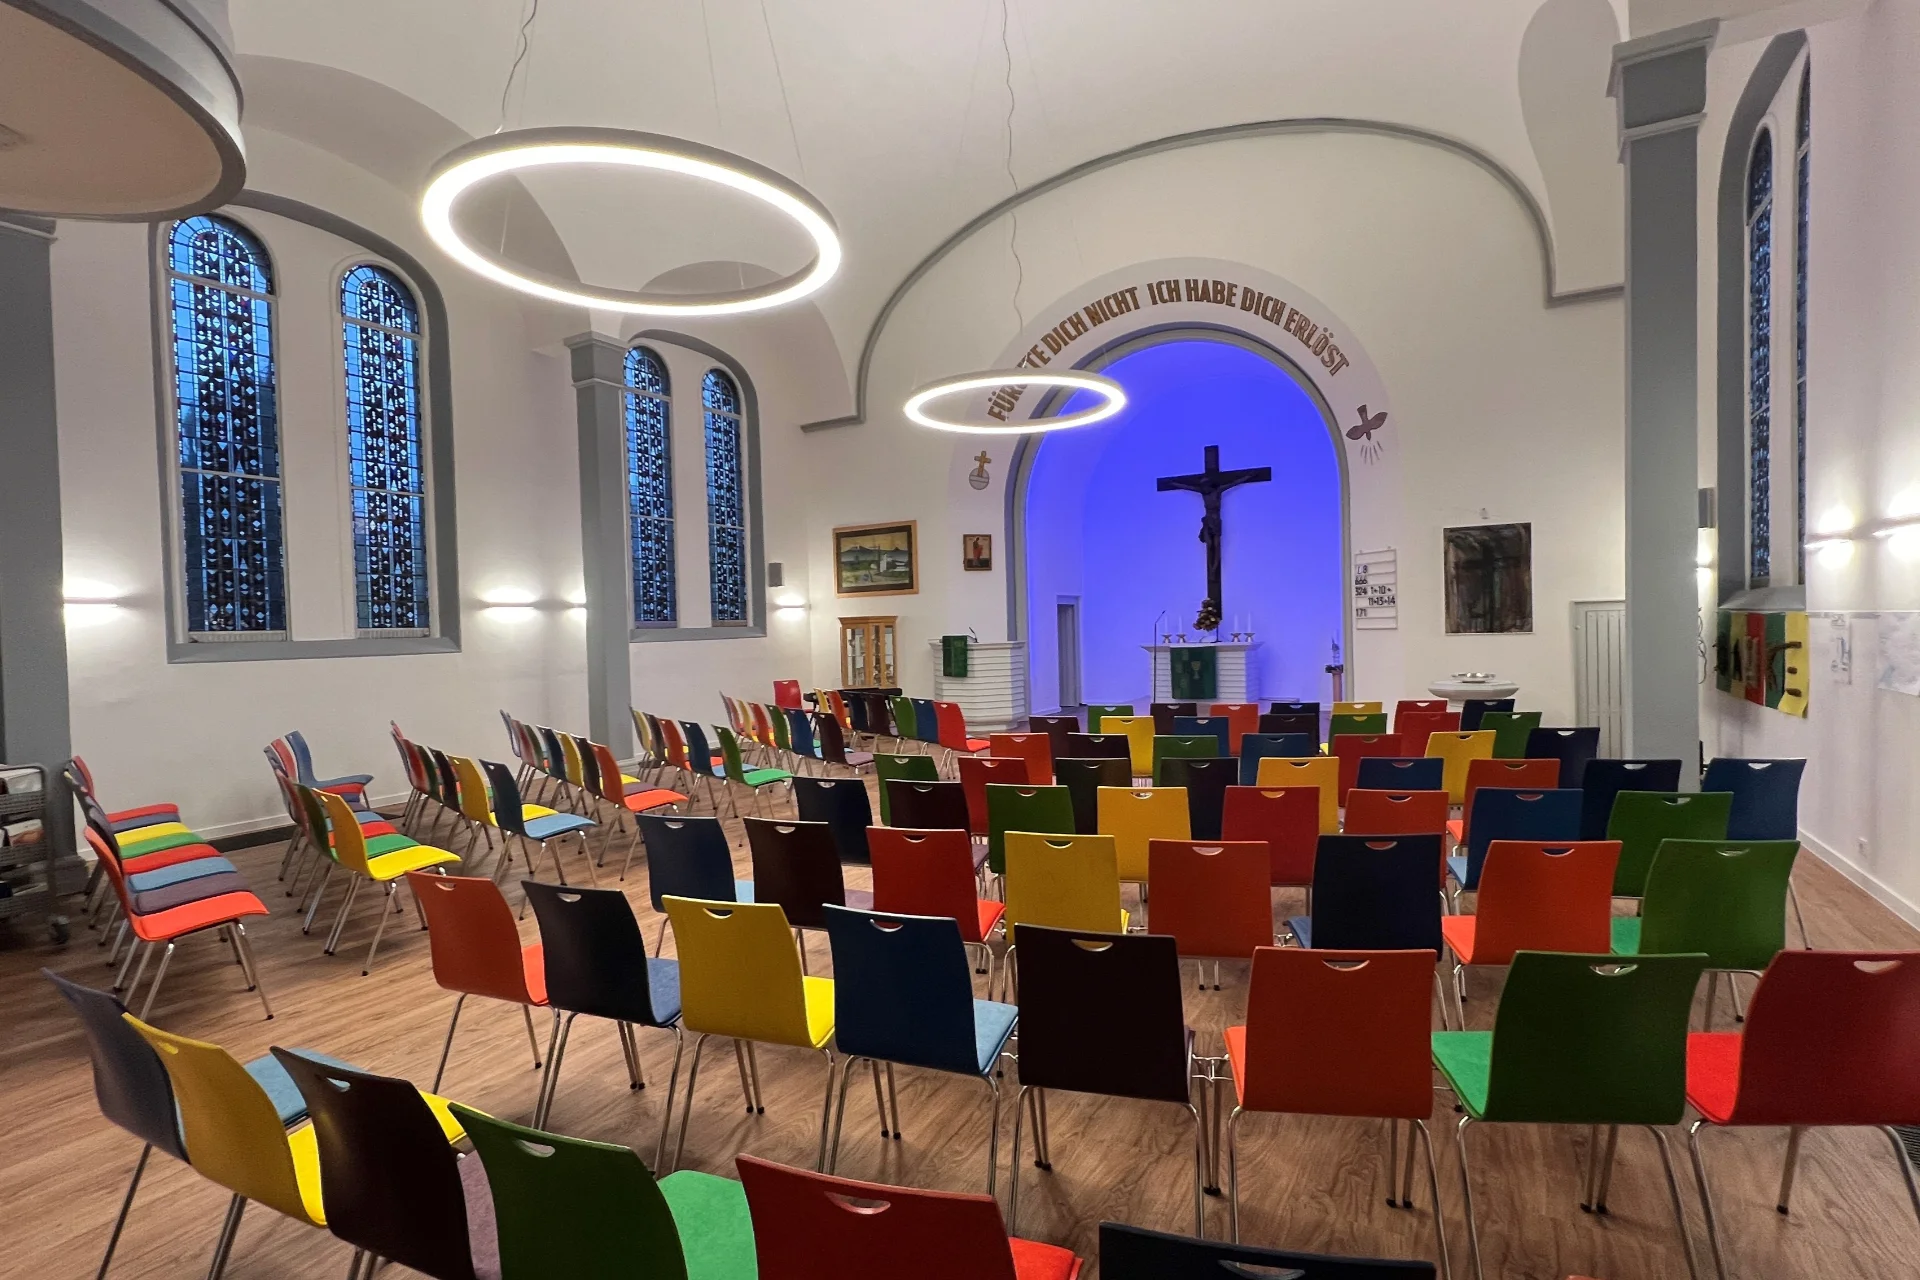 Multicolour LED-Altarbeleuchtung in der evangelischen Kirchengemeinde Dortmund Höchsten